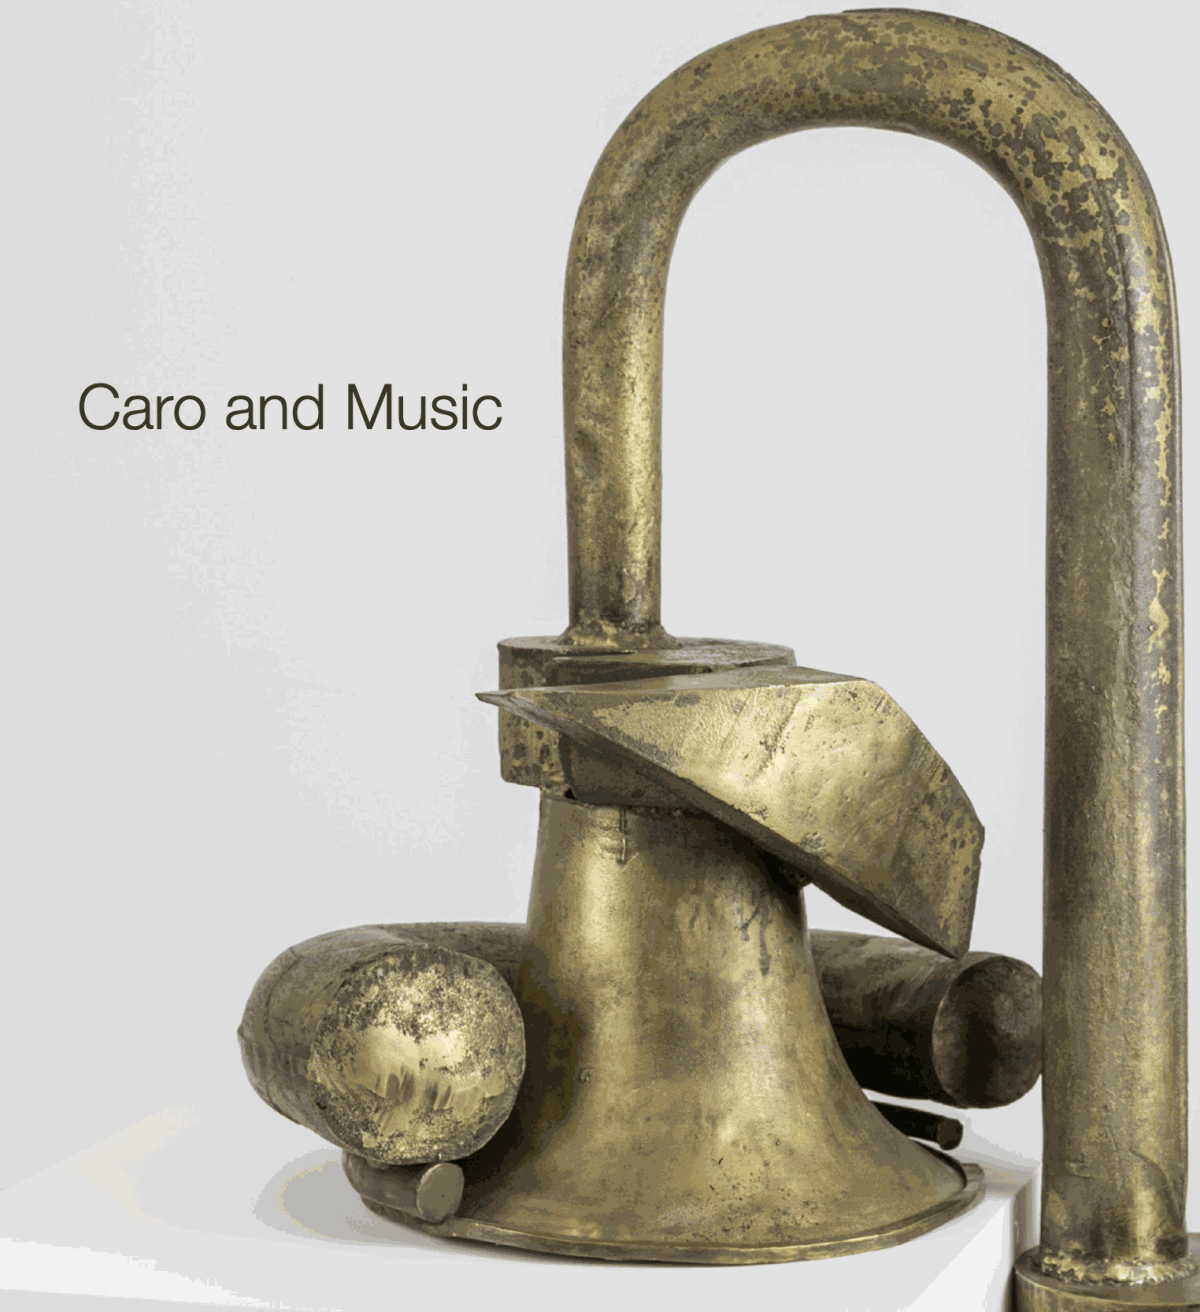 Caro and Music